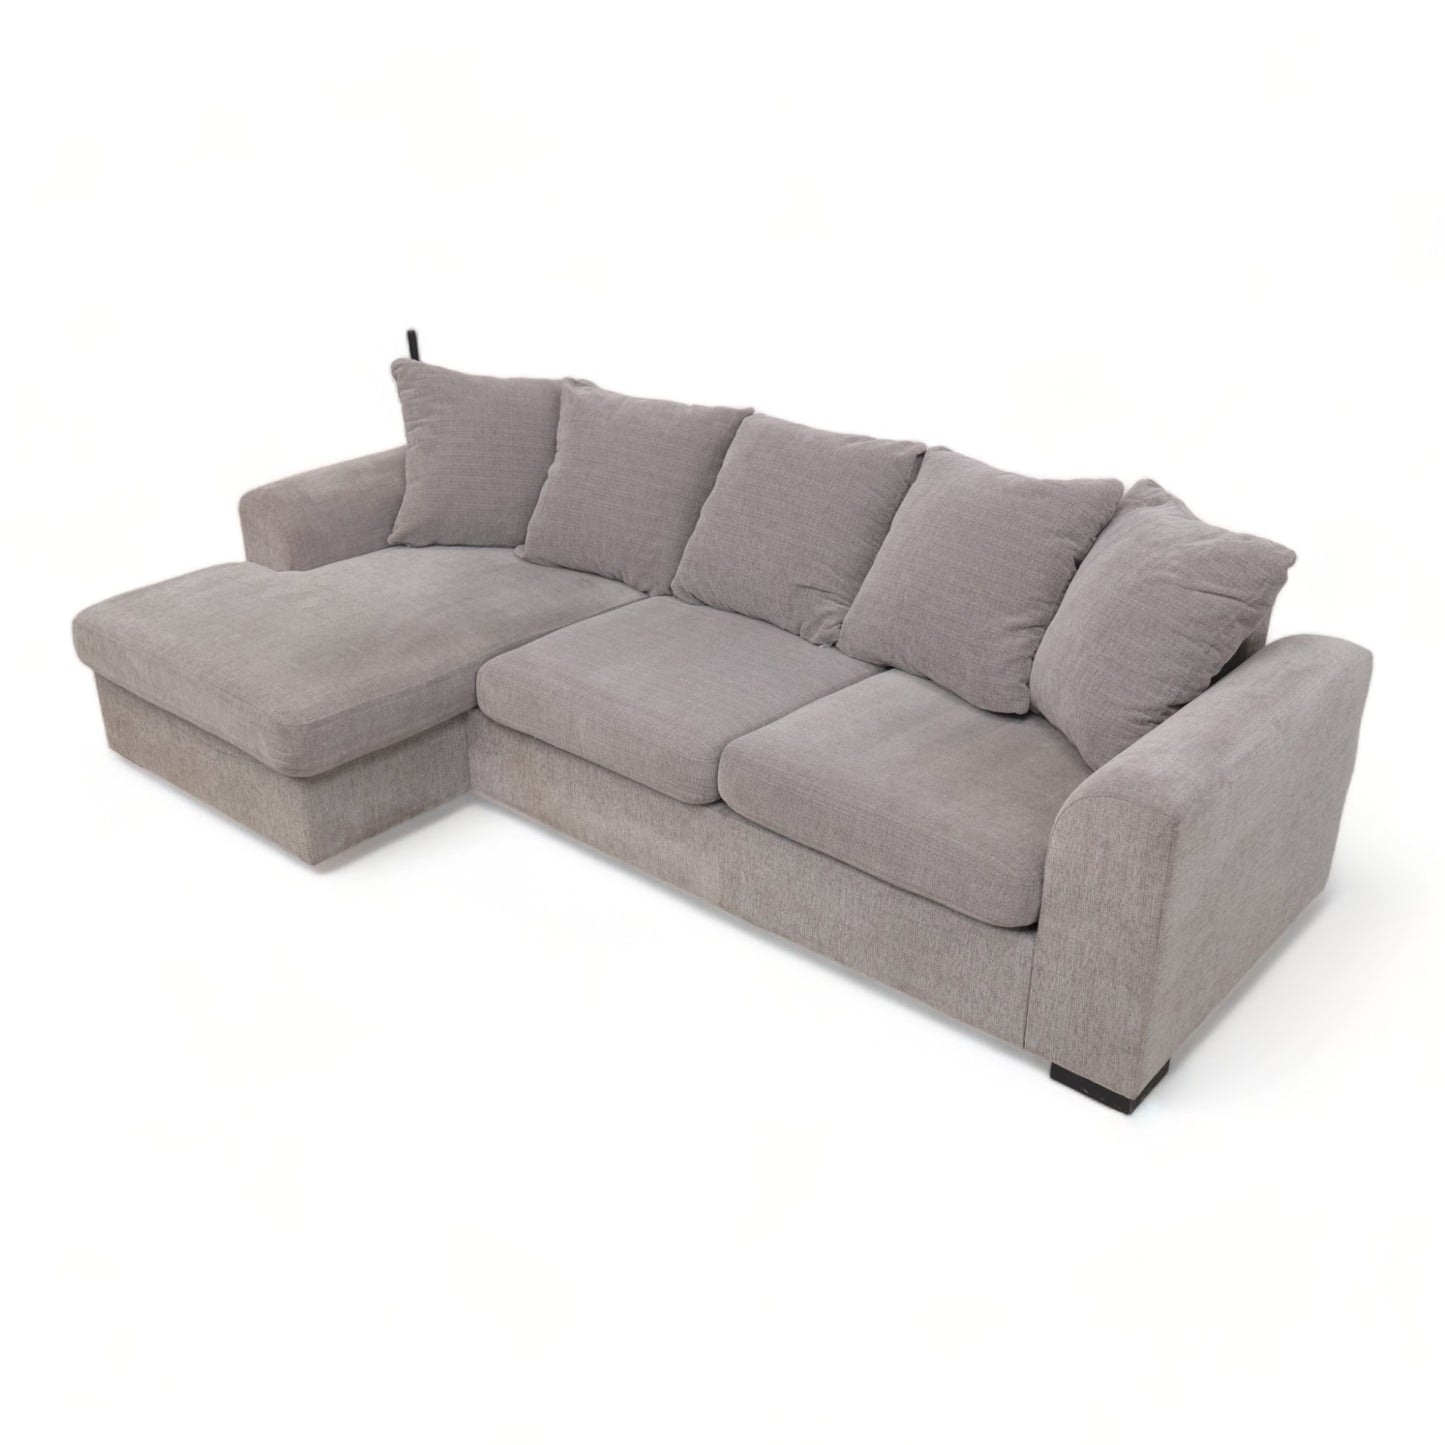 Nyrenset | Bohus sofa med sjeselong